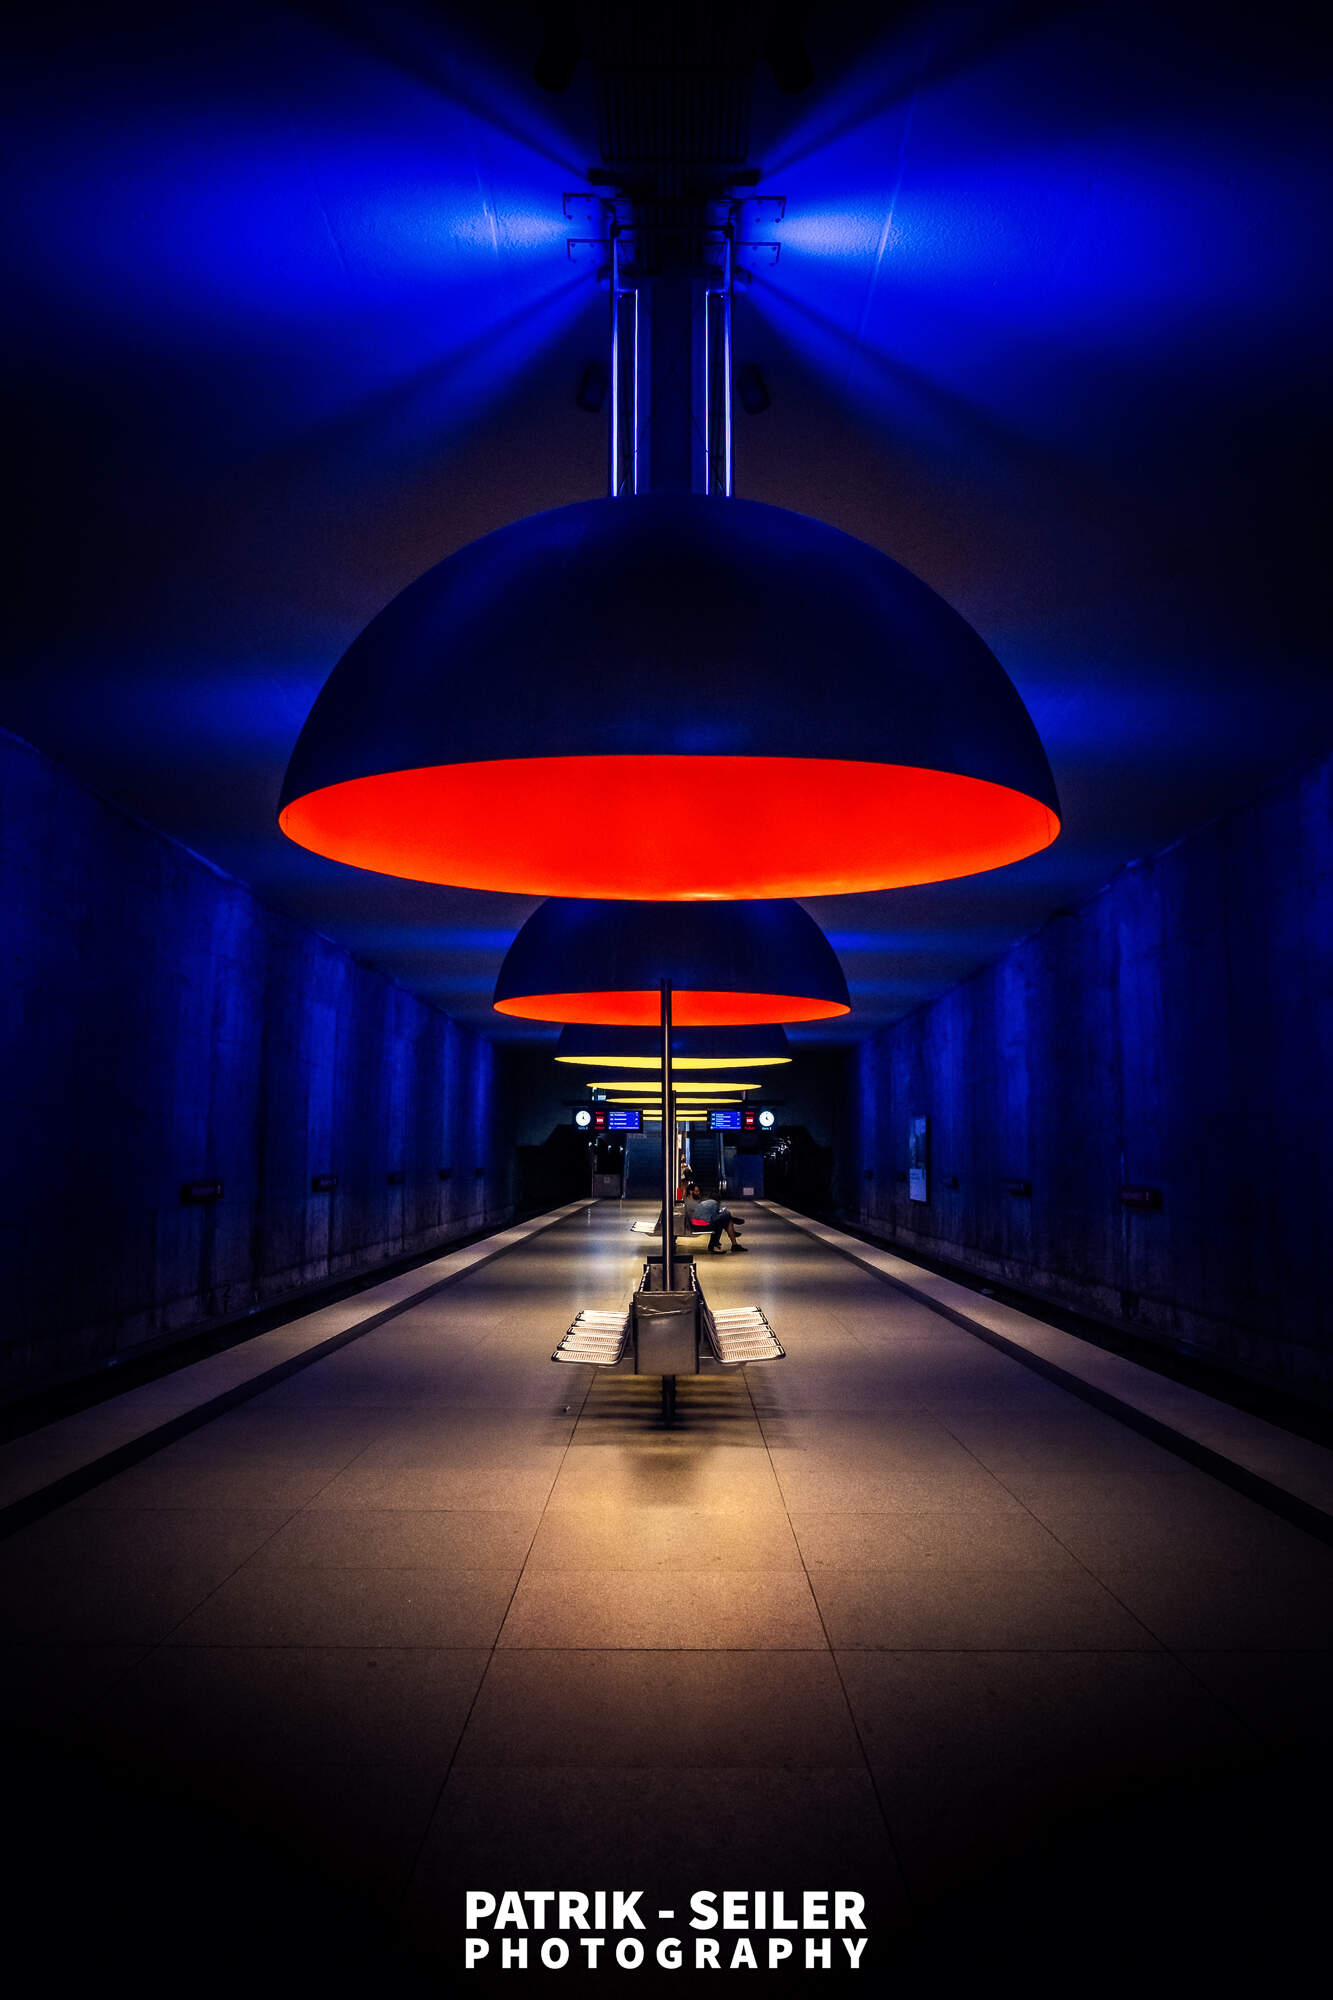 U-Bahn Station Westfriedhof in Munich - Germany